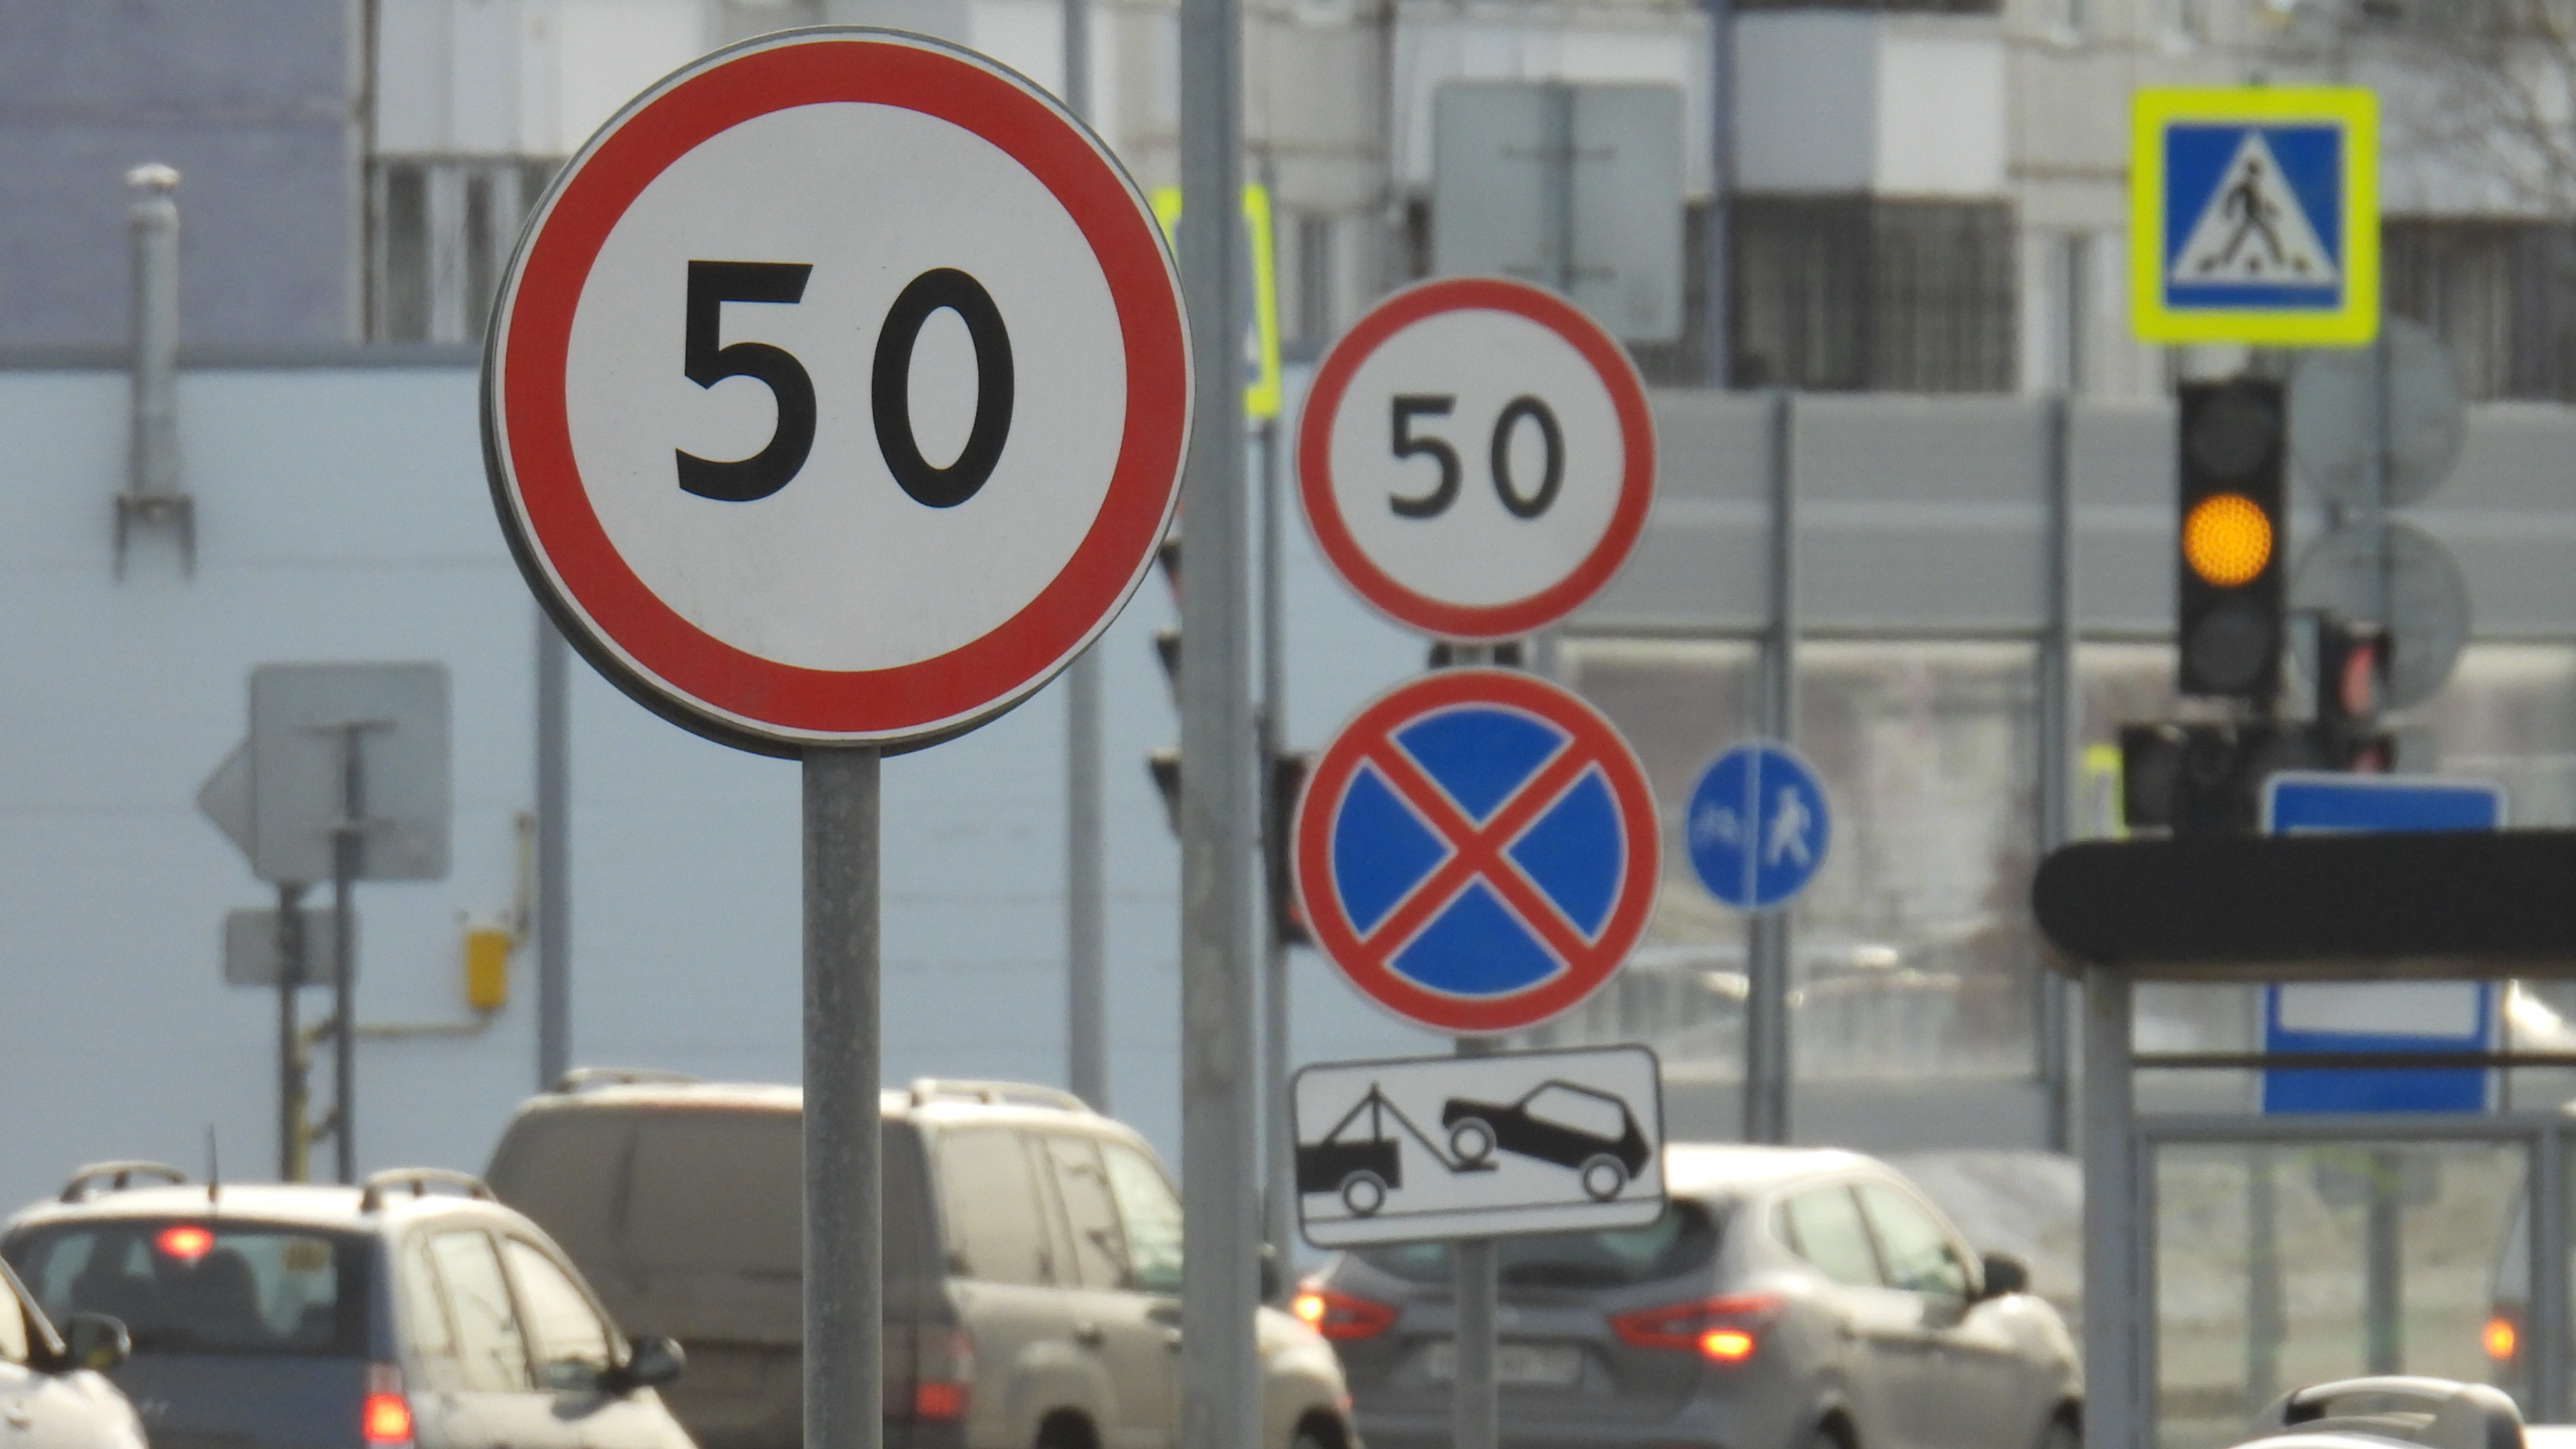 50 на «магистрали»: почему ограничили скорость на новой улице Строителей в Перми?